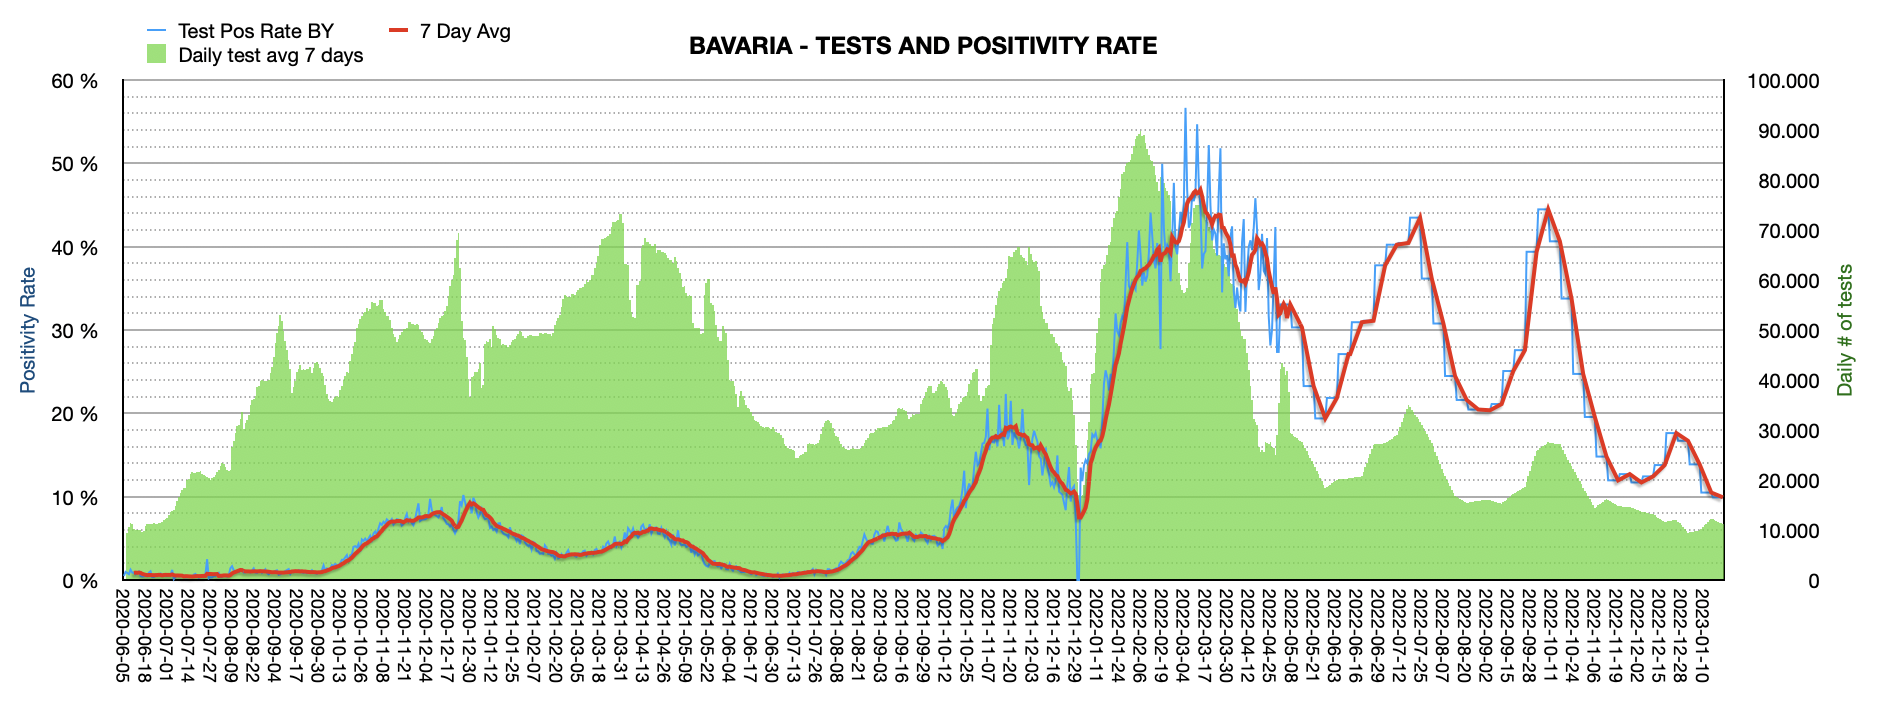 Grafik mit durchgeführten PCR Tests pro Tag in Bayern seit Juni 2020. Die Zahl der Tests pro Tag ist mit 11.929 ziemlich niedrig und weit vom Maximum von ca. 100.000 Tests/Tag entfernt. Die Positivrate sinkt auf jetzt 10,63%.